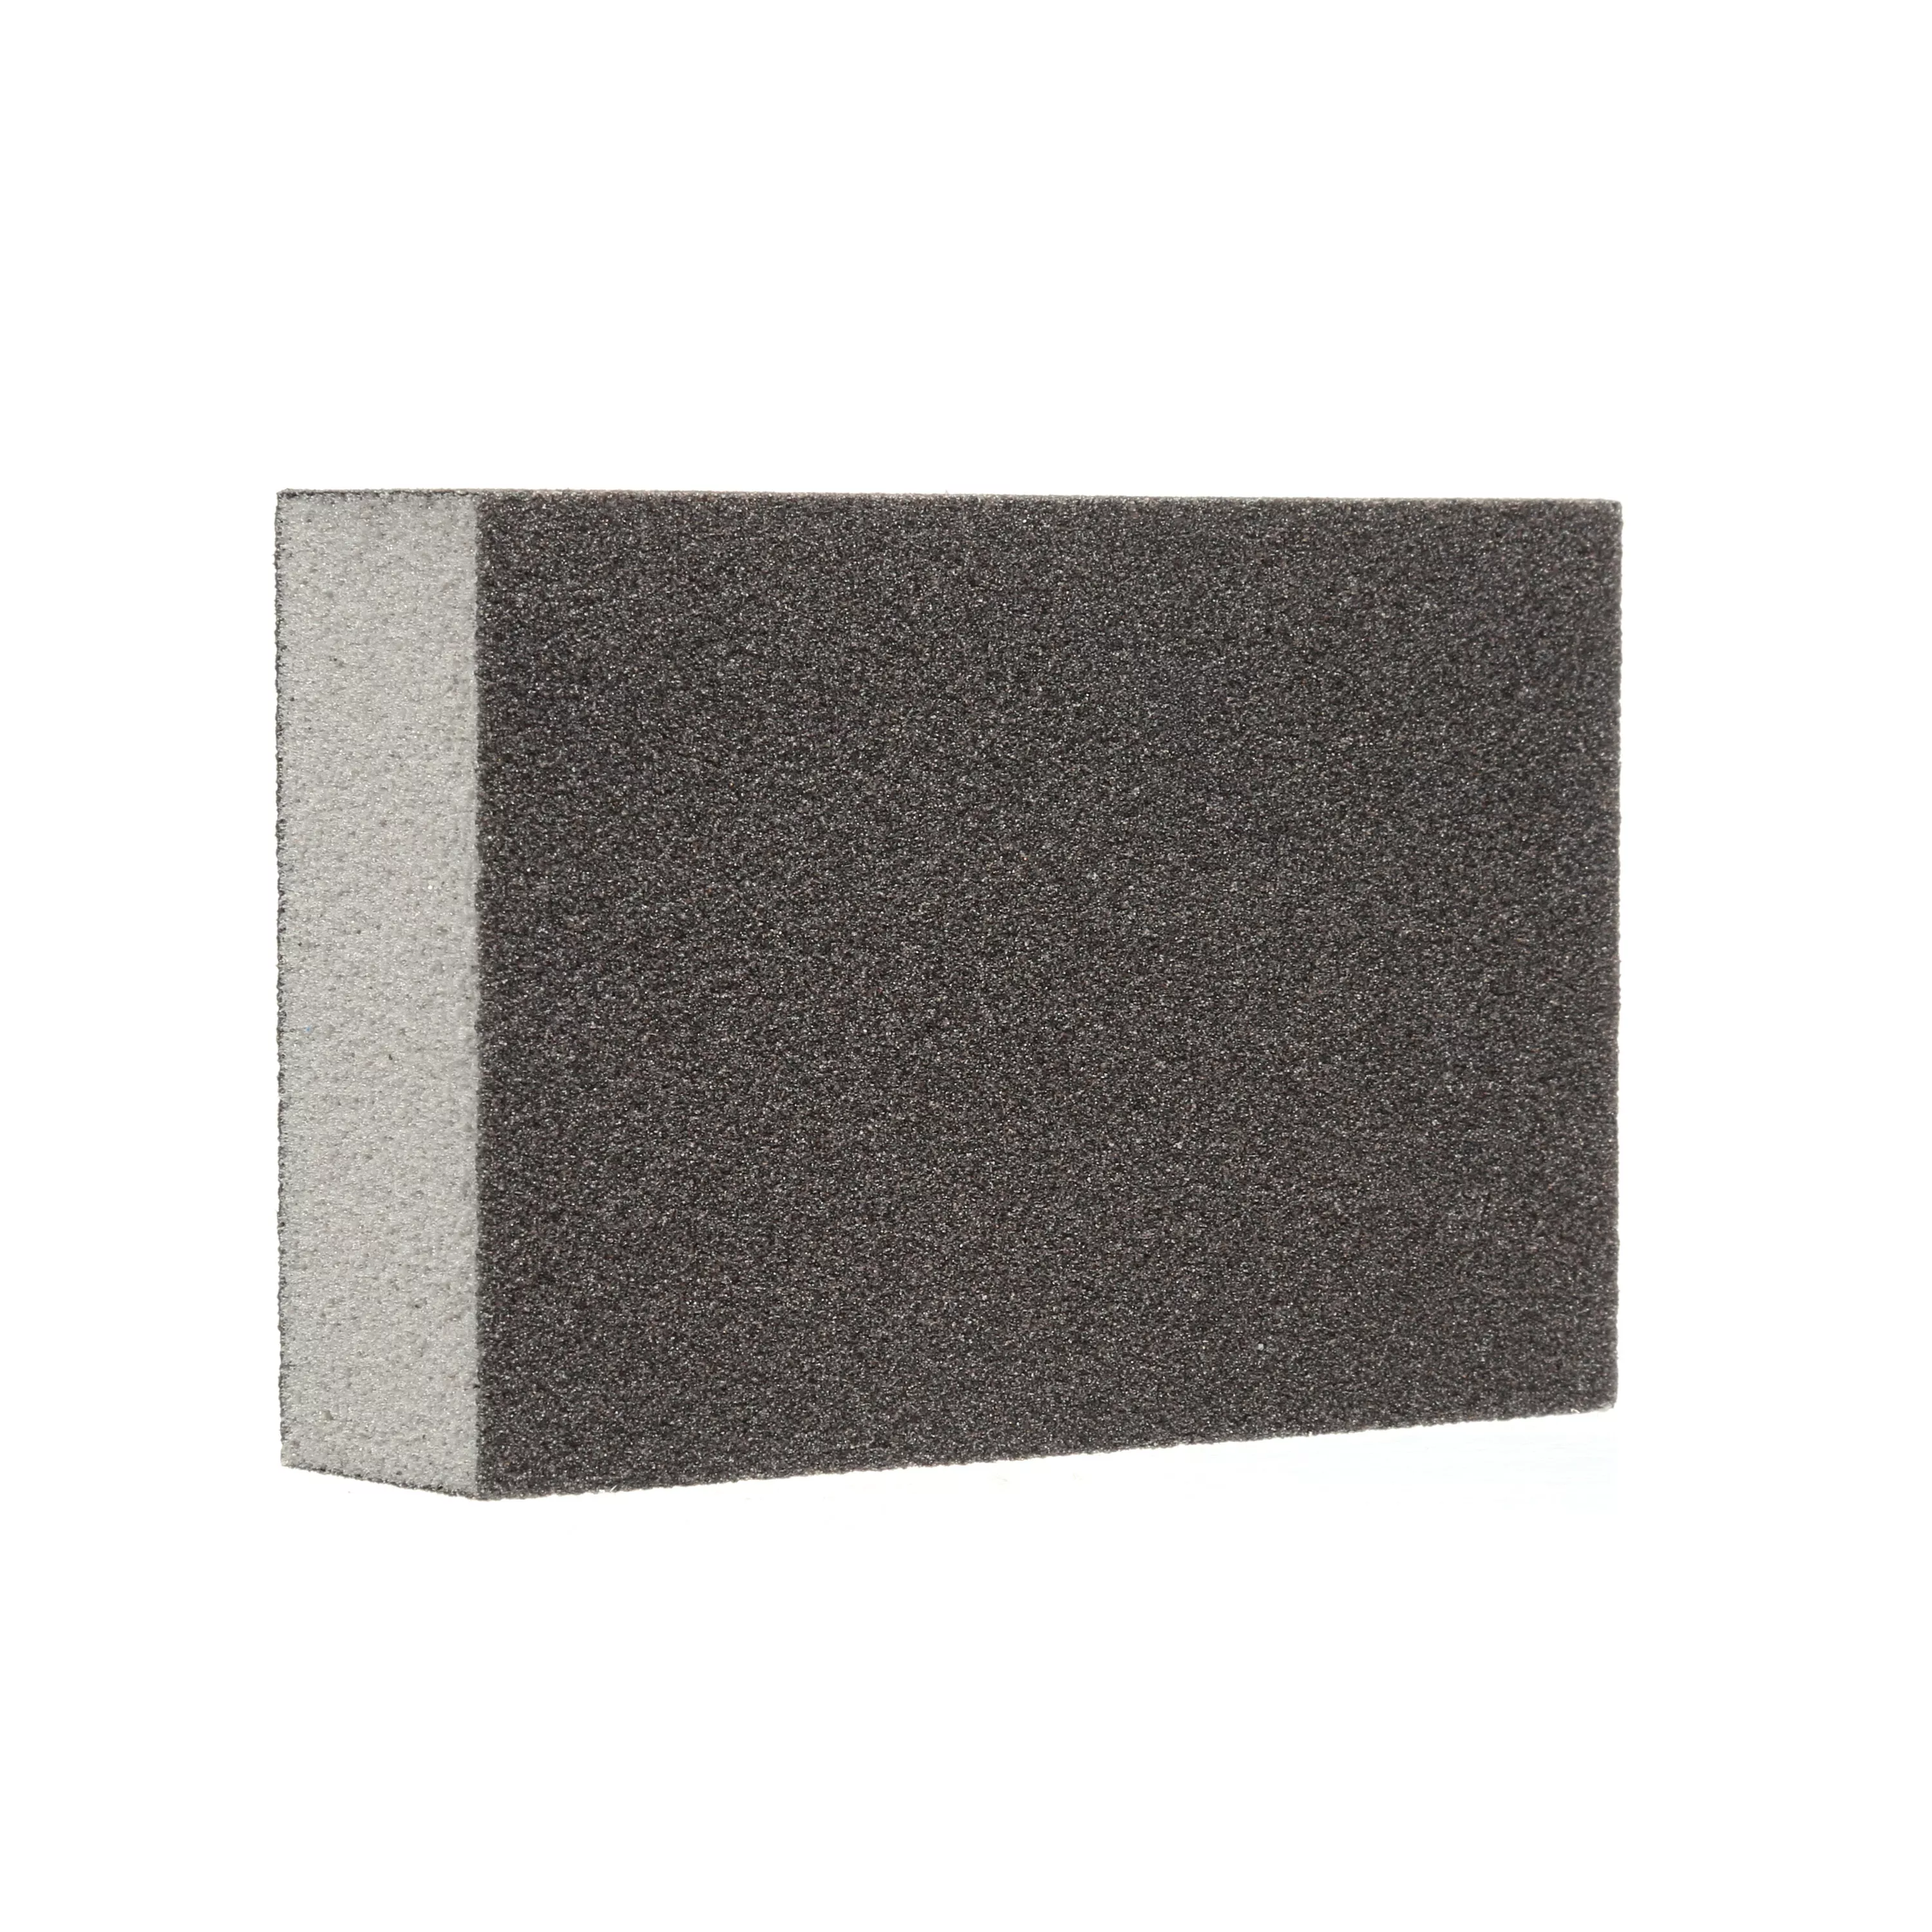 Product Number CP002-6P-CC | 3M™ Sanding Sponge CP002-6P-CC